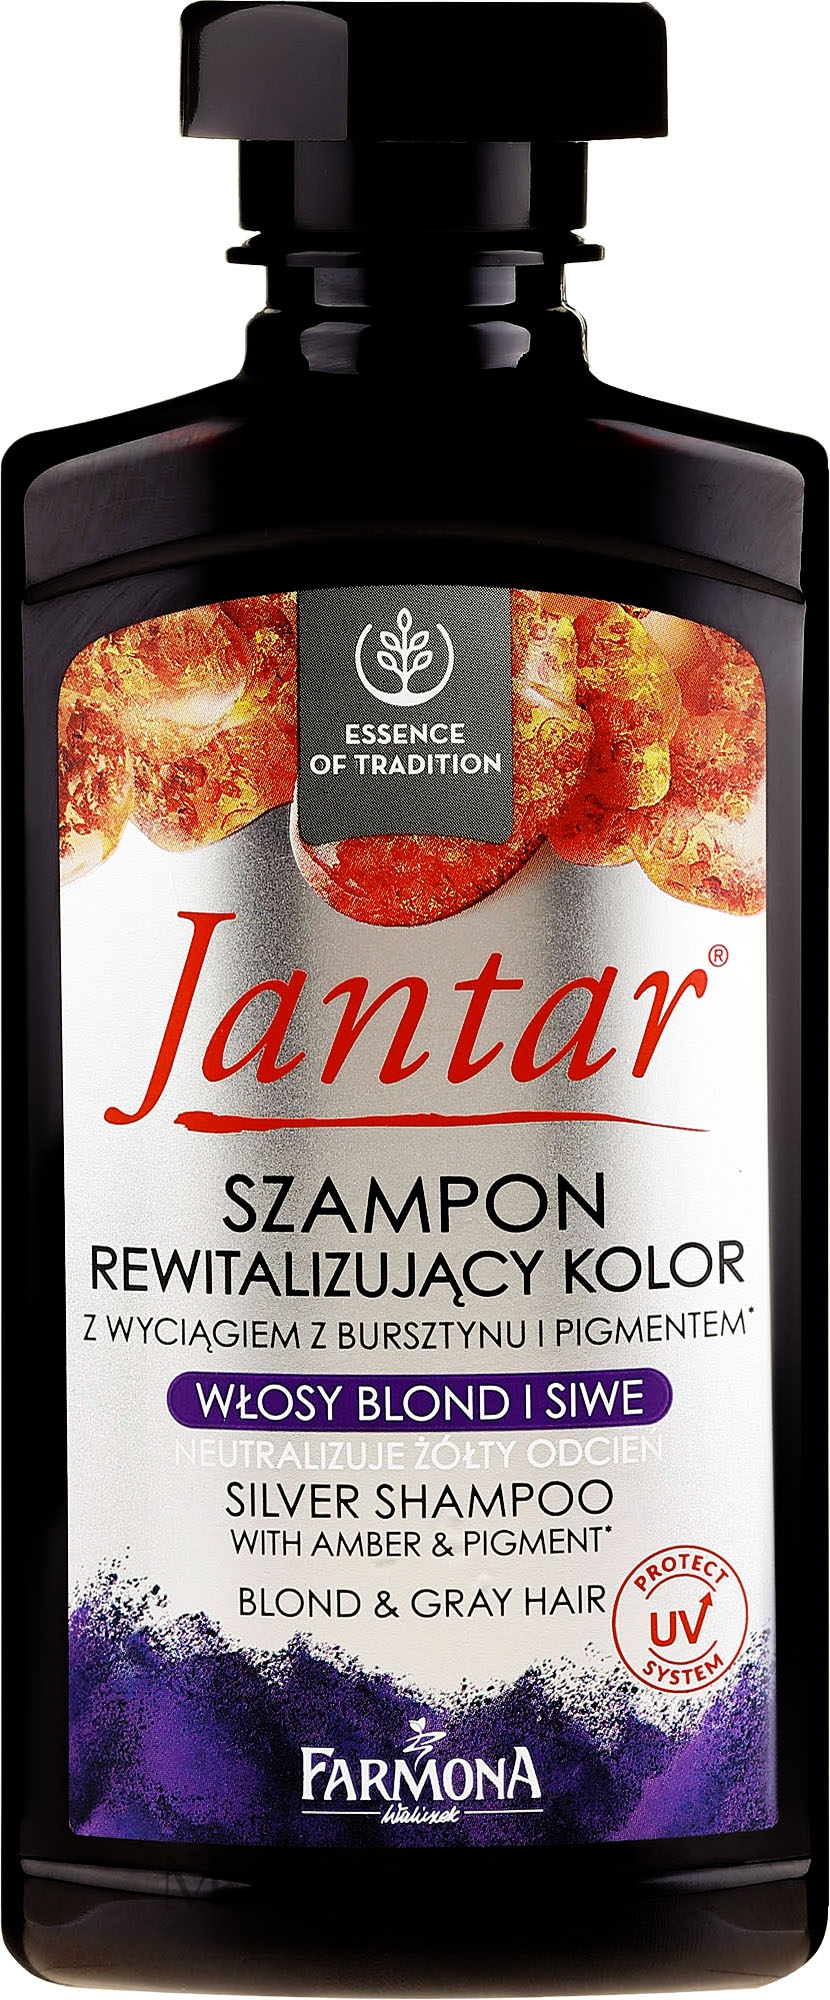 szampon jantar do włosów farbowanych opinie